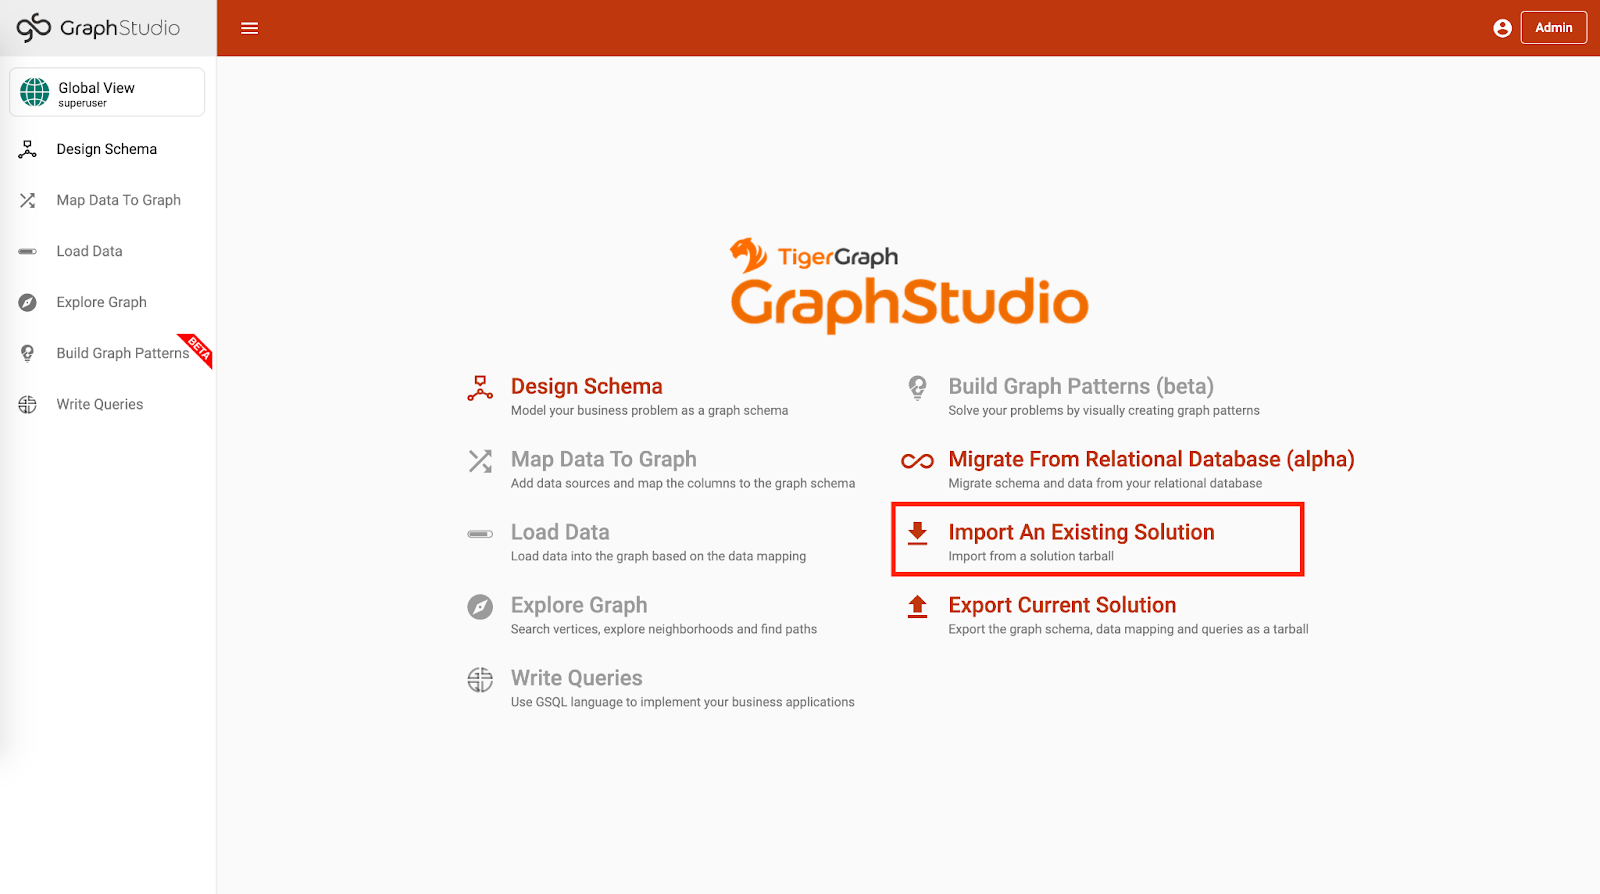 GraphStudio homepage